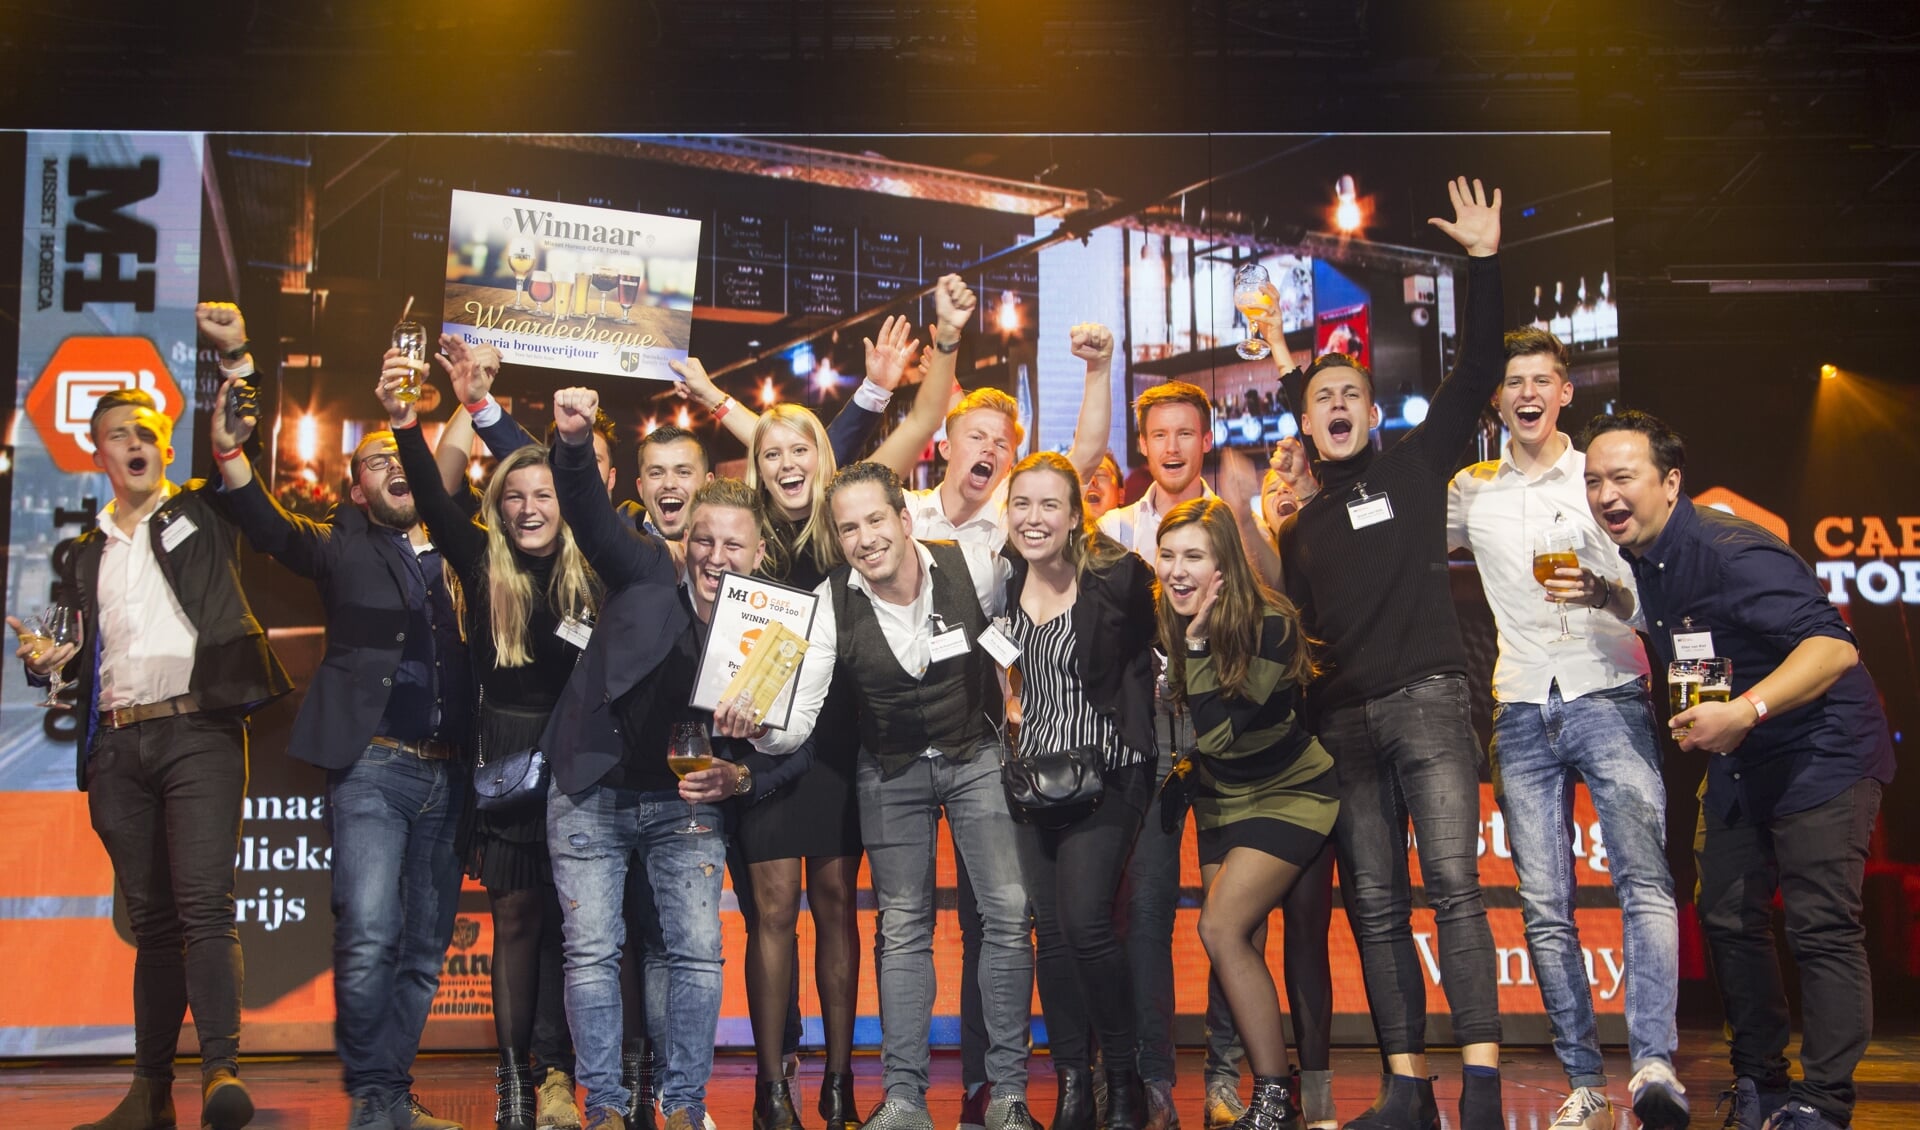 Het team van Proeflokaal Goesting viert het winnen van de publieksprijs op de Café Top 100 in Hilversum. Foto: Koos Groenewold